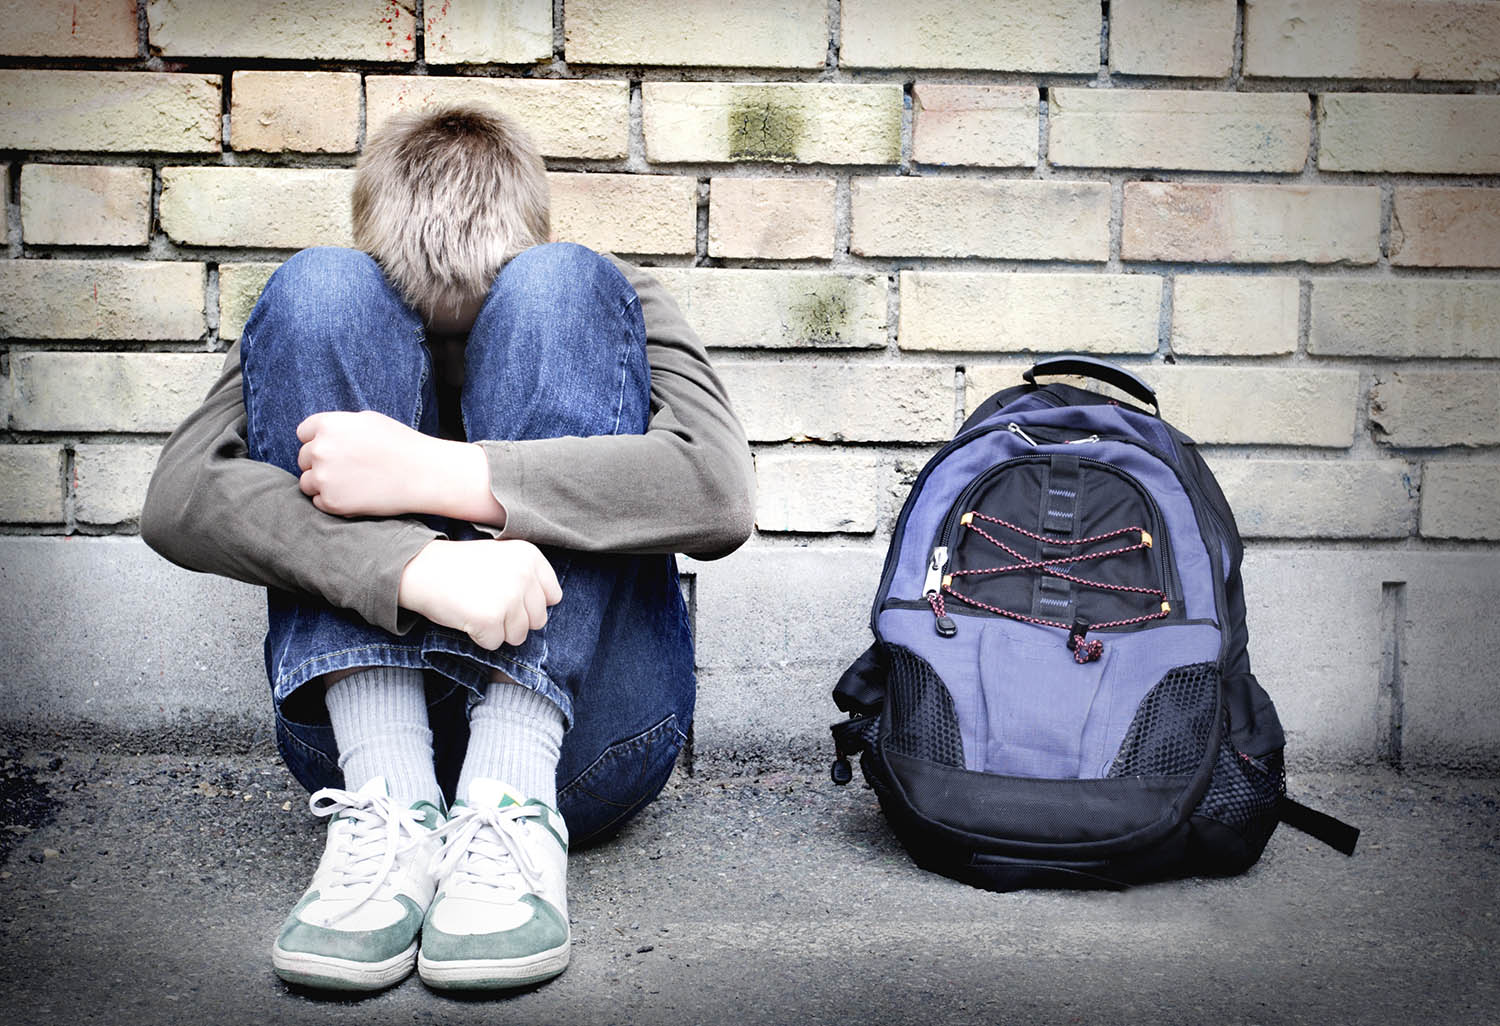 Підлітковий суїцид: як запобігти трагедії? 